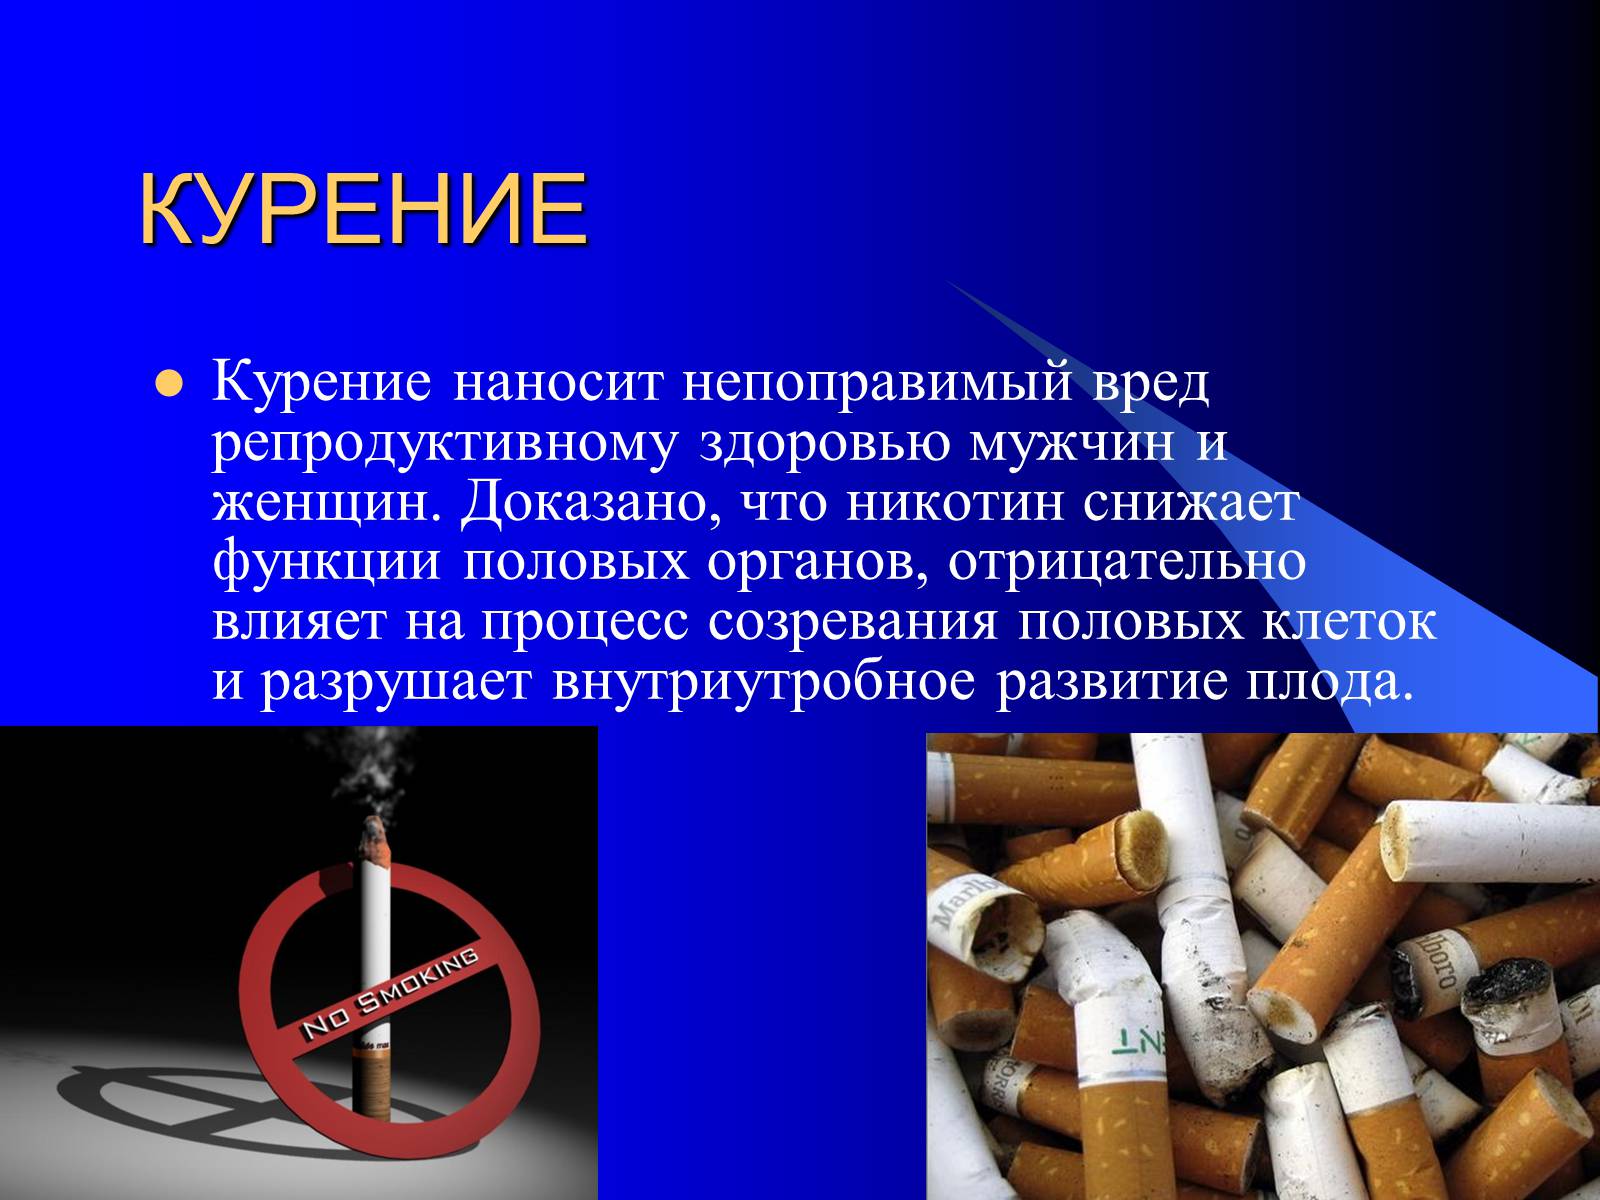 Действие курения на человека. Влияние вредных привычек на организм. Влияние табакокурения на репродуктивное здоровье. Влияние курения на репродуктивную систему человека. Влияние табакокурения на репродуктивную систему.